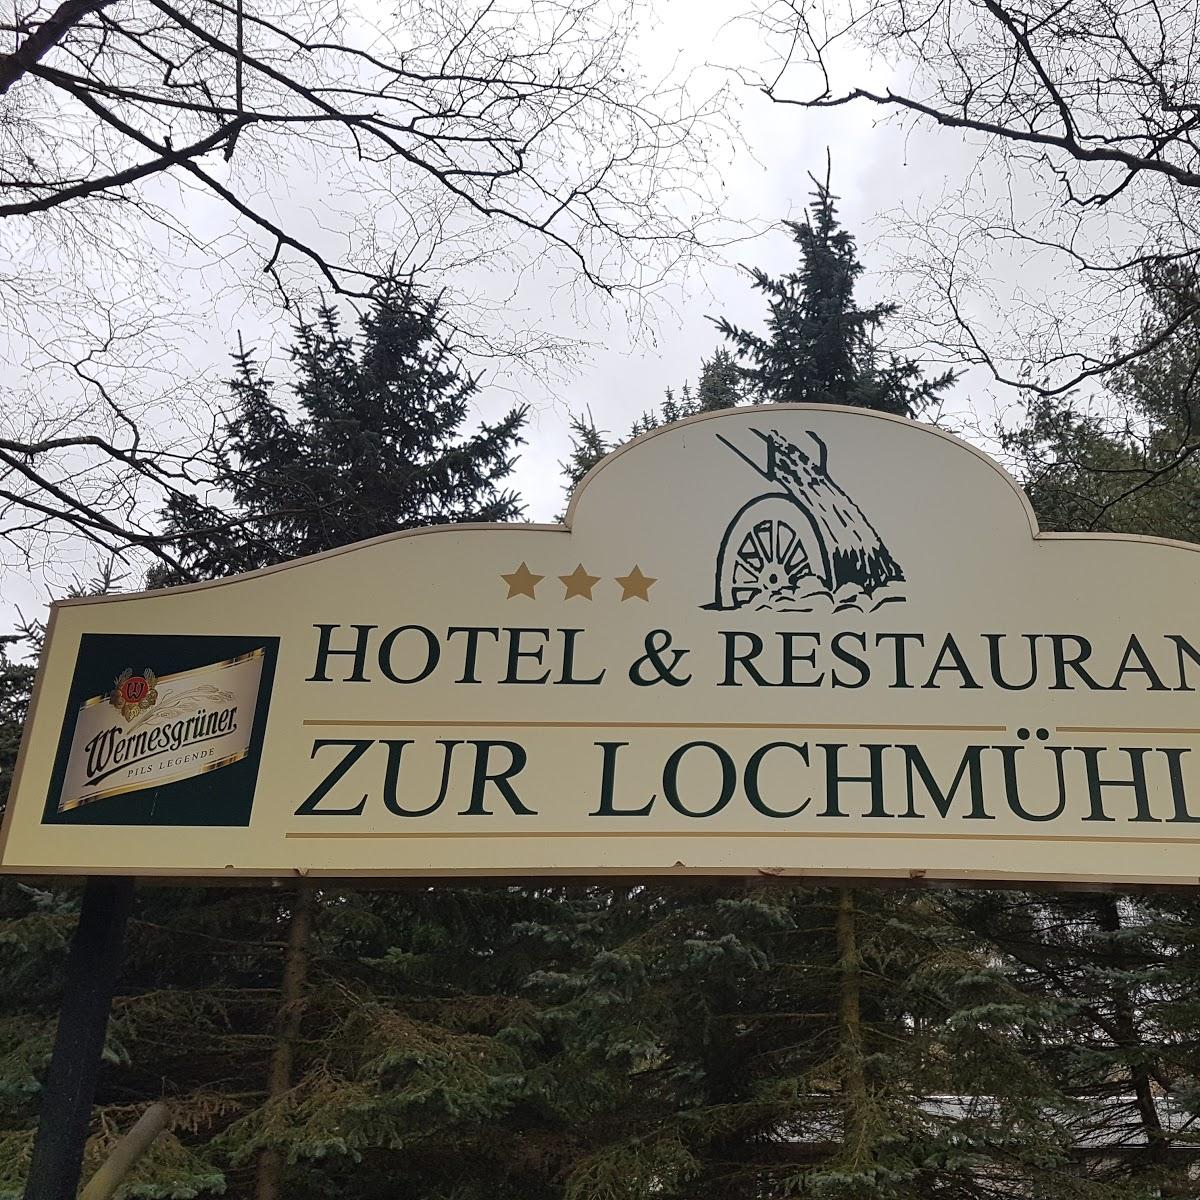 Restaurant "Hotel und Restaurant Zur Lochmühle GmbH in  - Sachsen" in  Penig